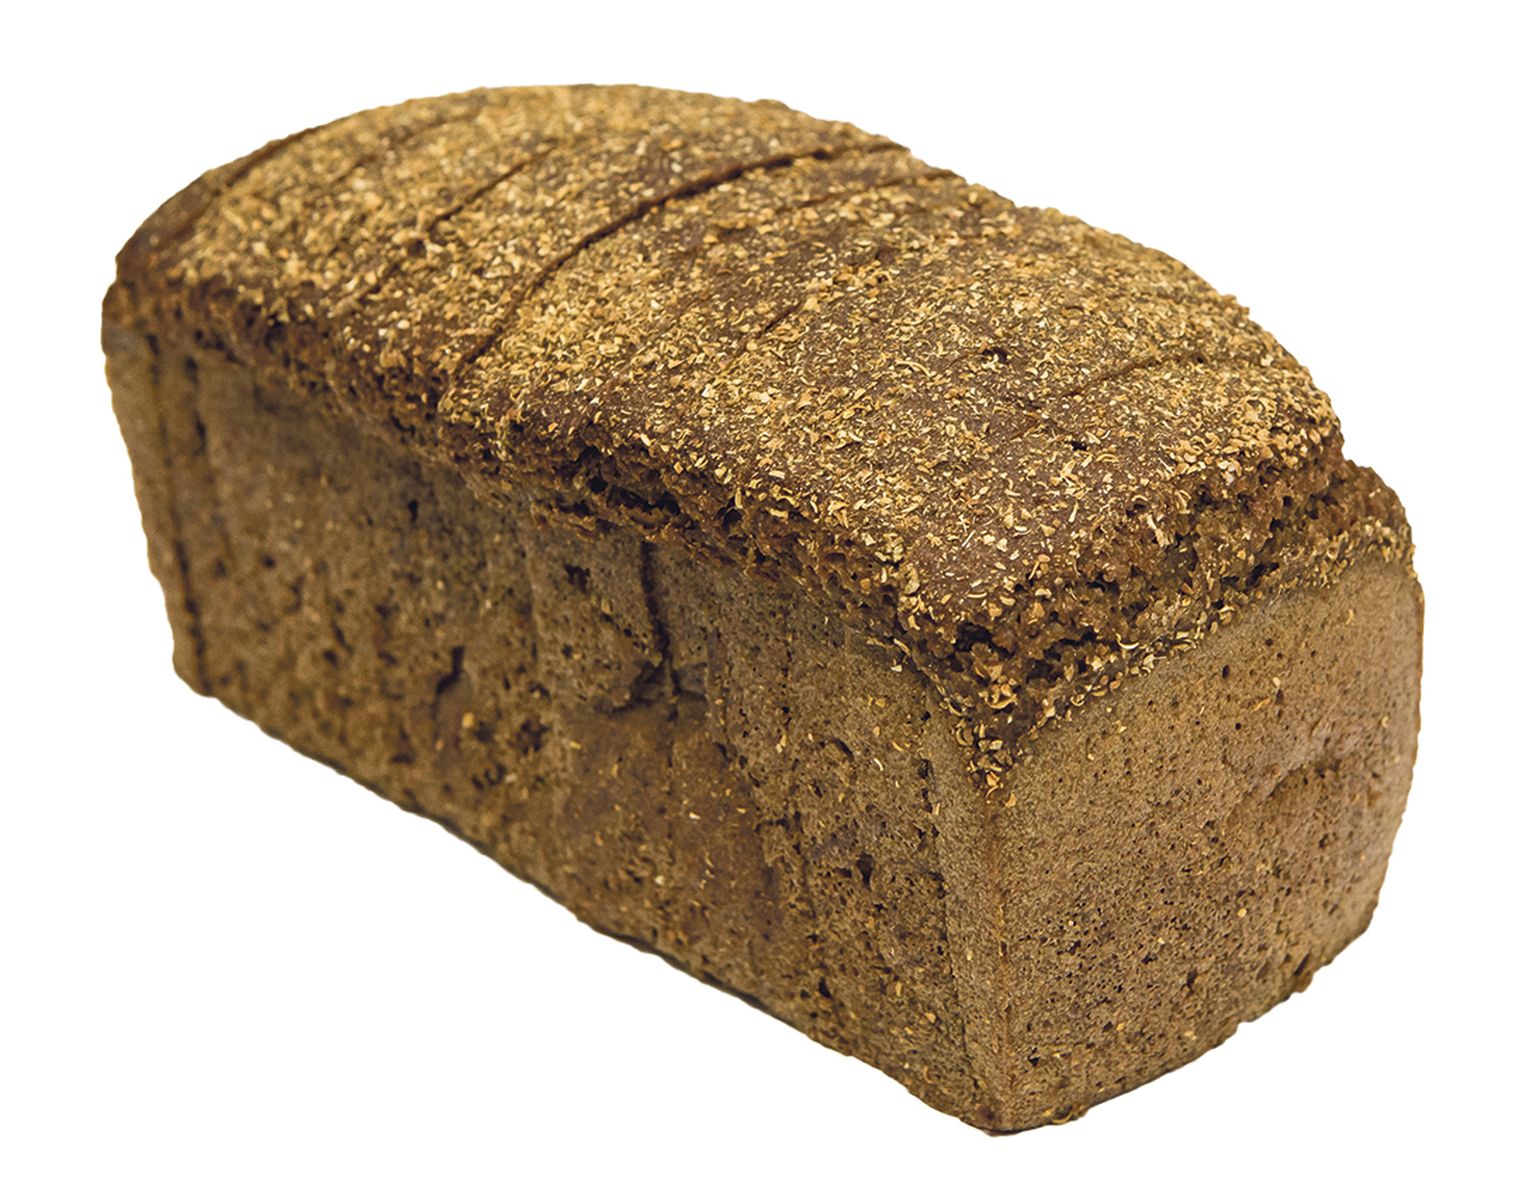 Borodino leib